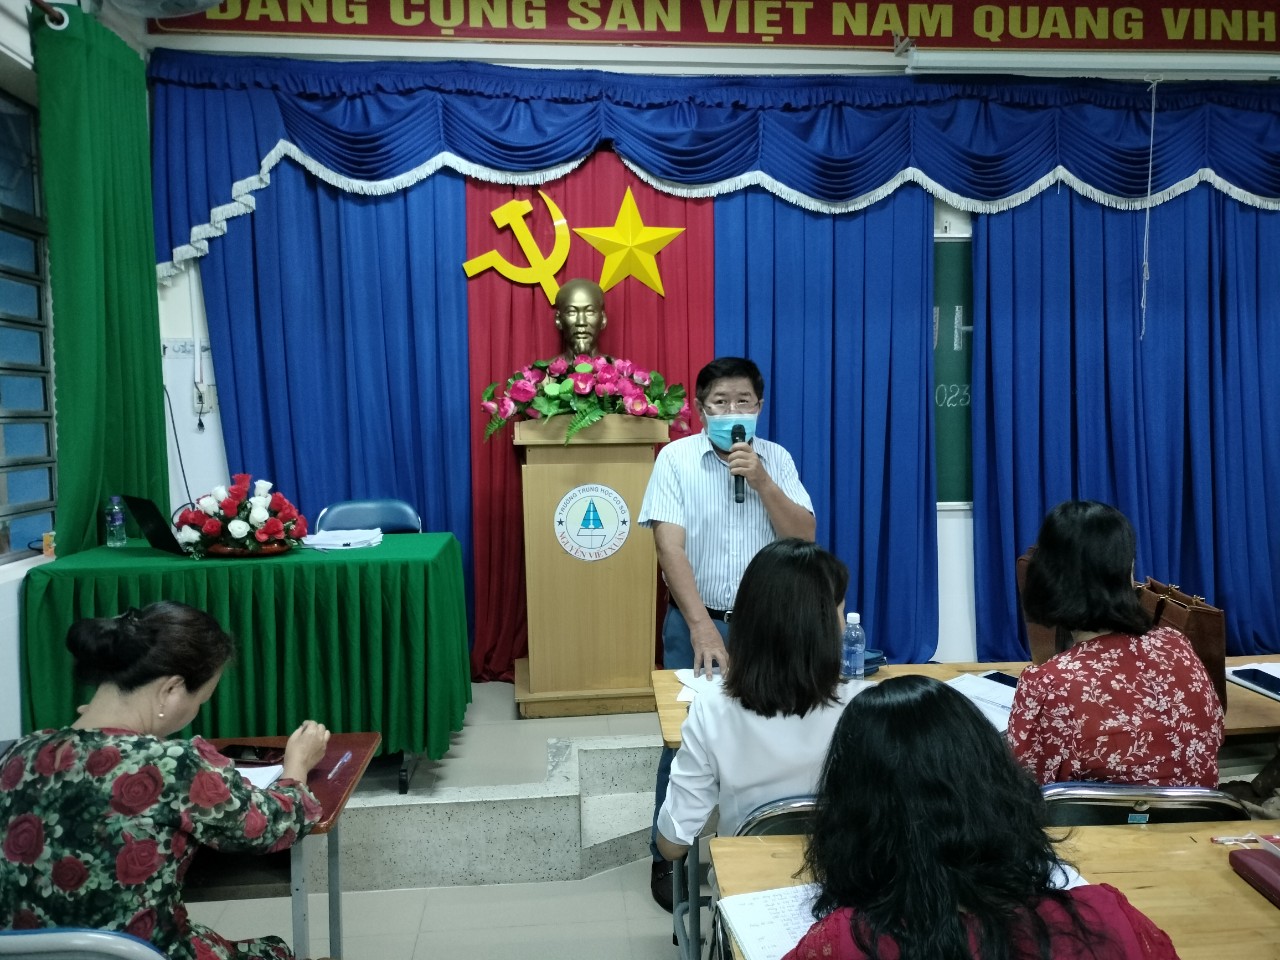 Thầy Nguyễn Thành Phương chủ tịch công đoàn chúc mừng sinh nhật các công đoàn viên